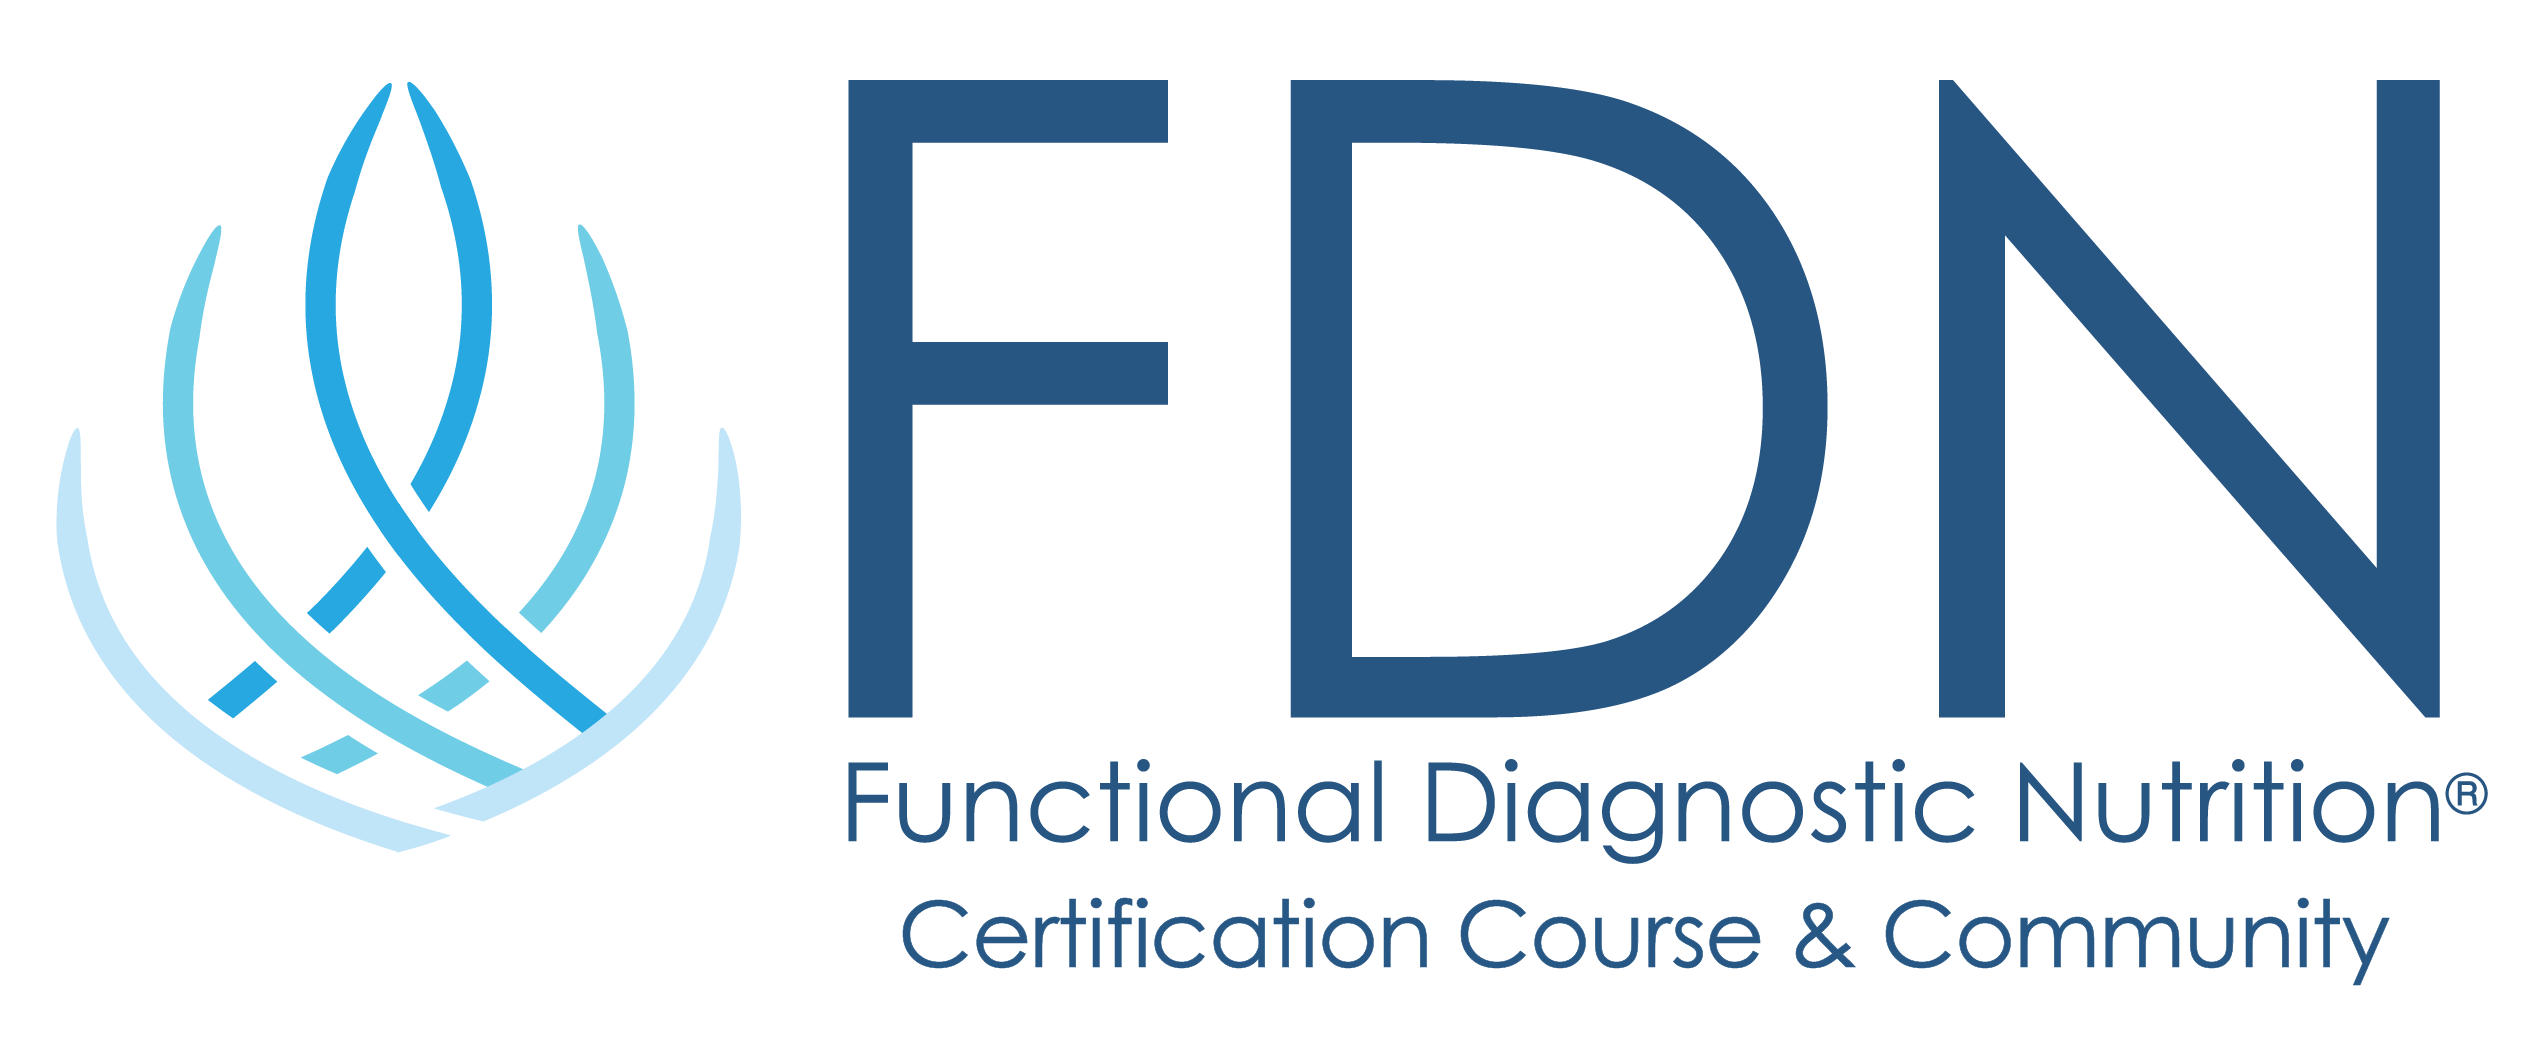 FDN Long Vertical Logo